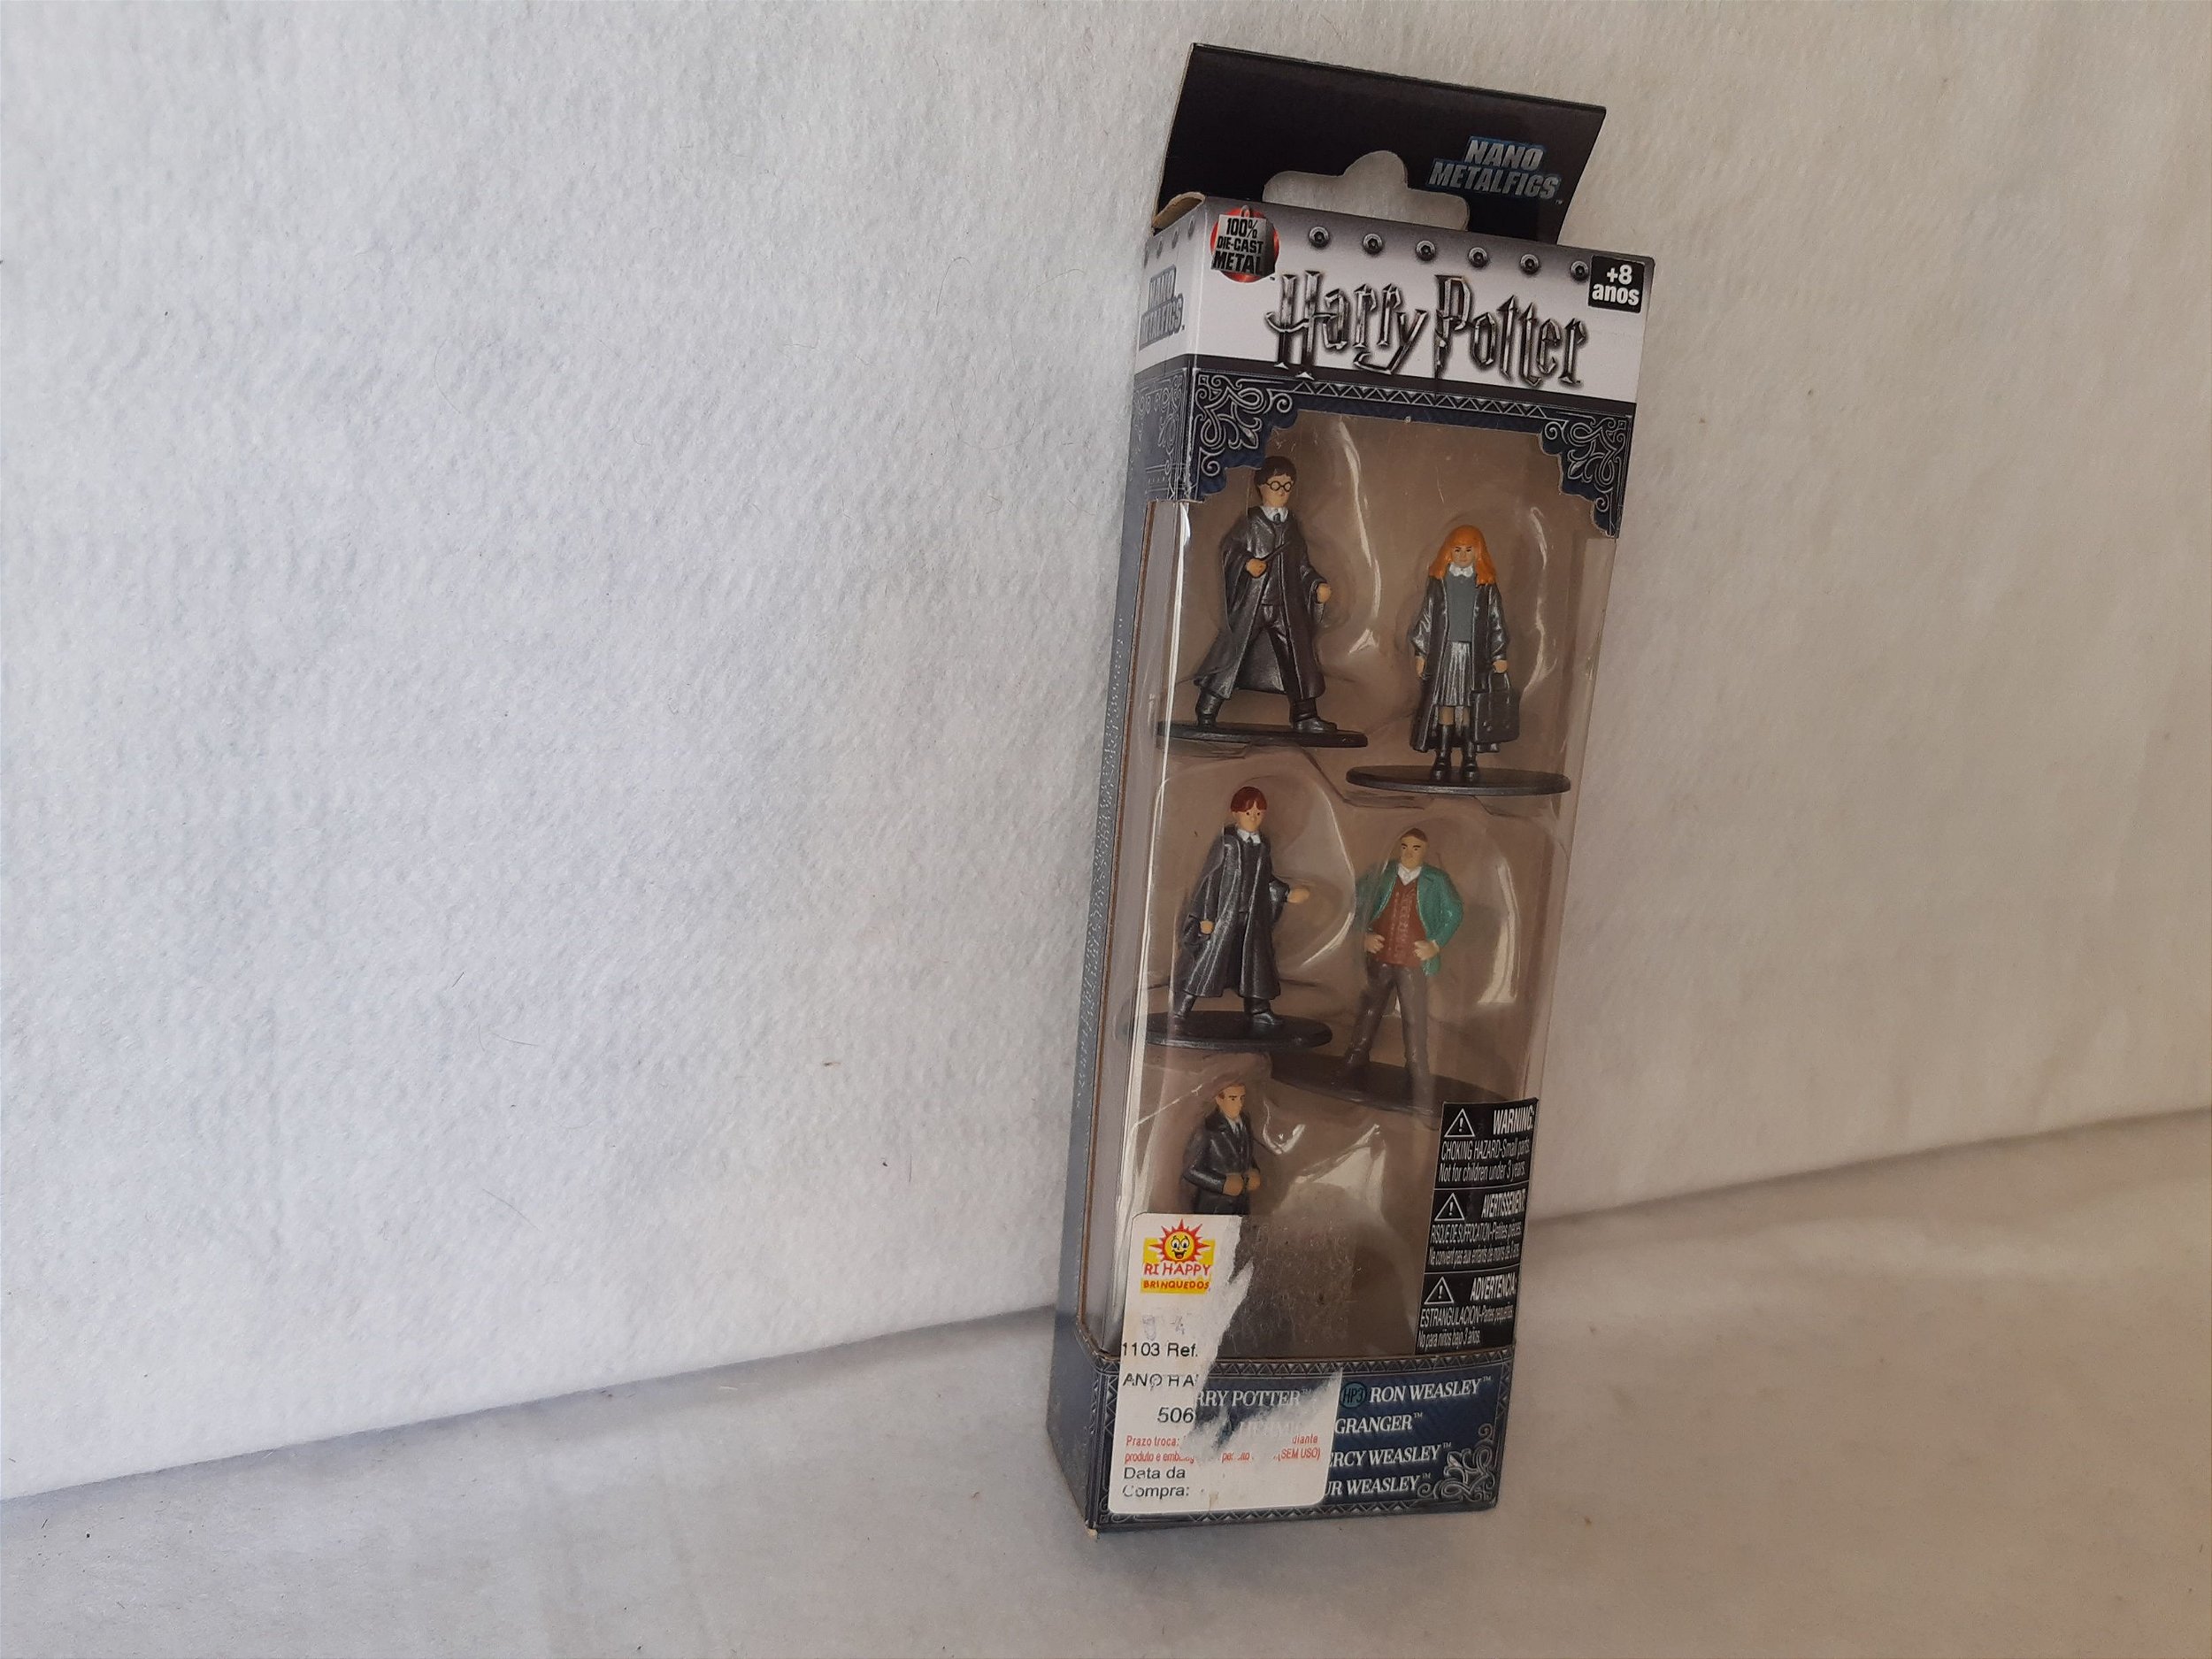 Ampulheta da Hermione da coleção de xadrez Harry Potter revista de Agostini  - Taffy Shop - Brechó de brinquedos